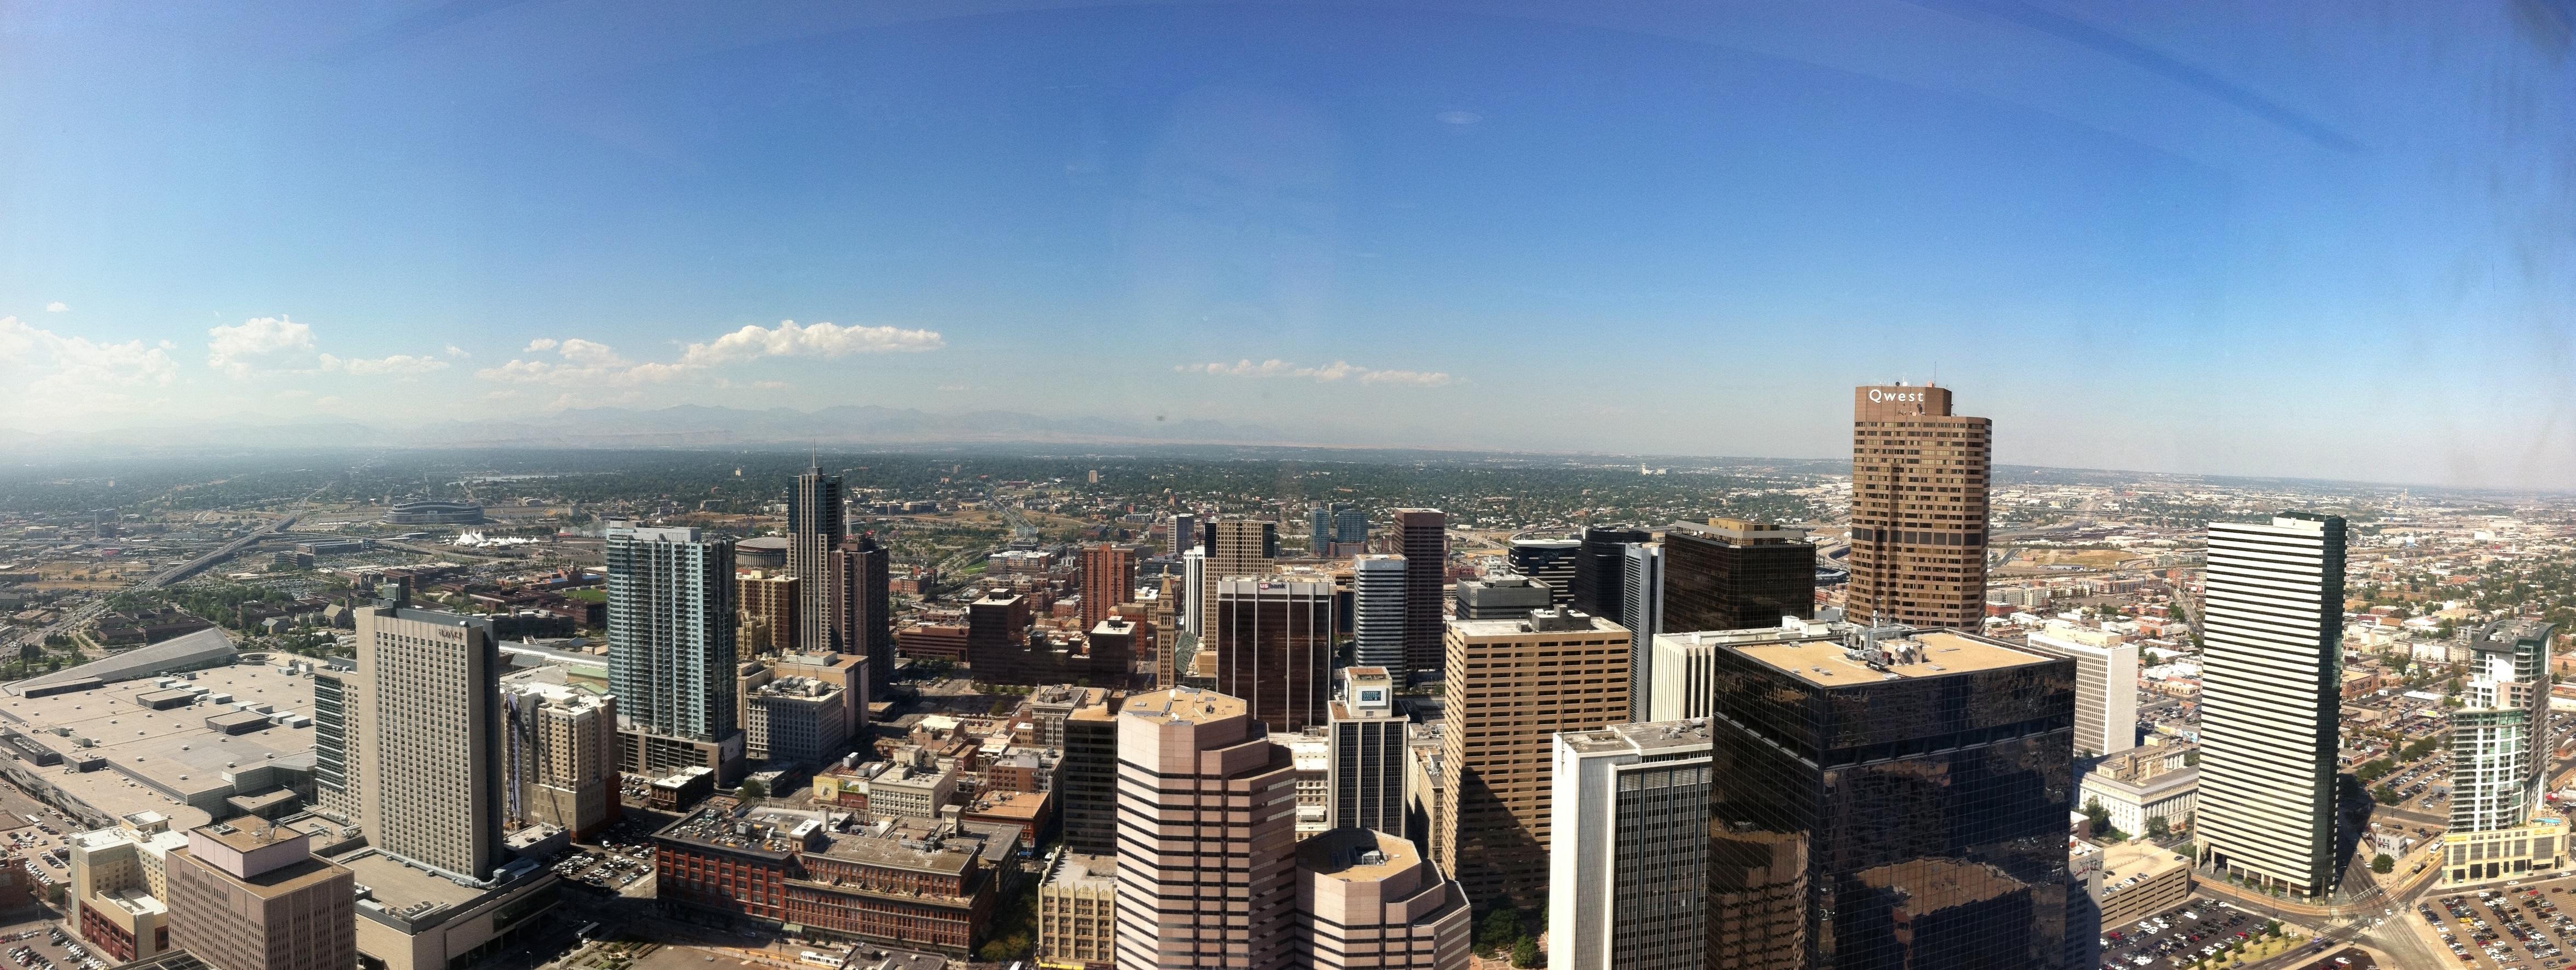 File:Denver skyline-02.jpg - Wikimedia Commons